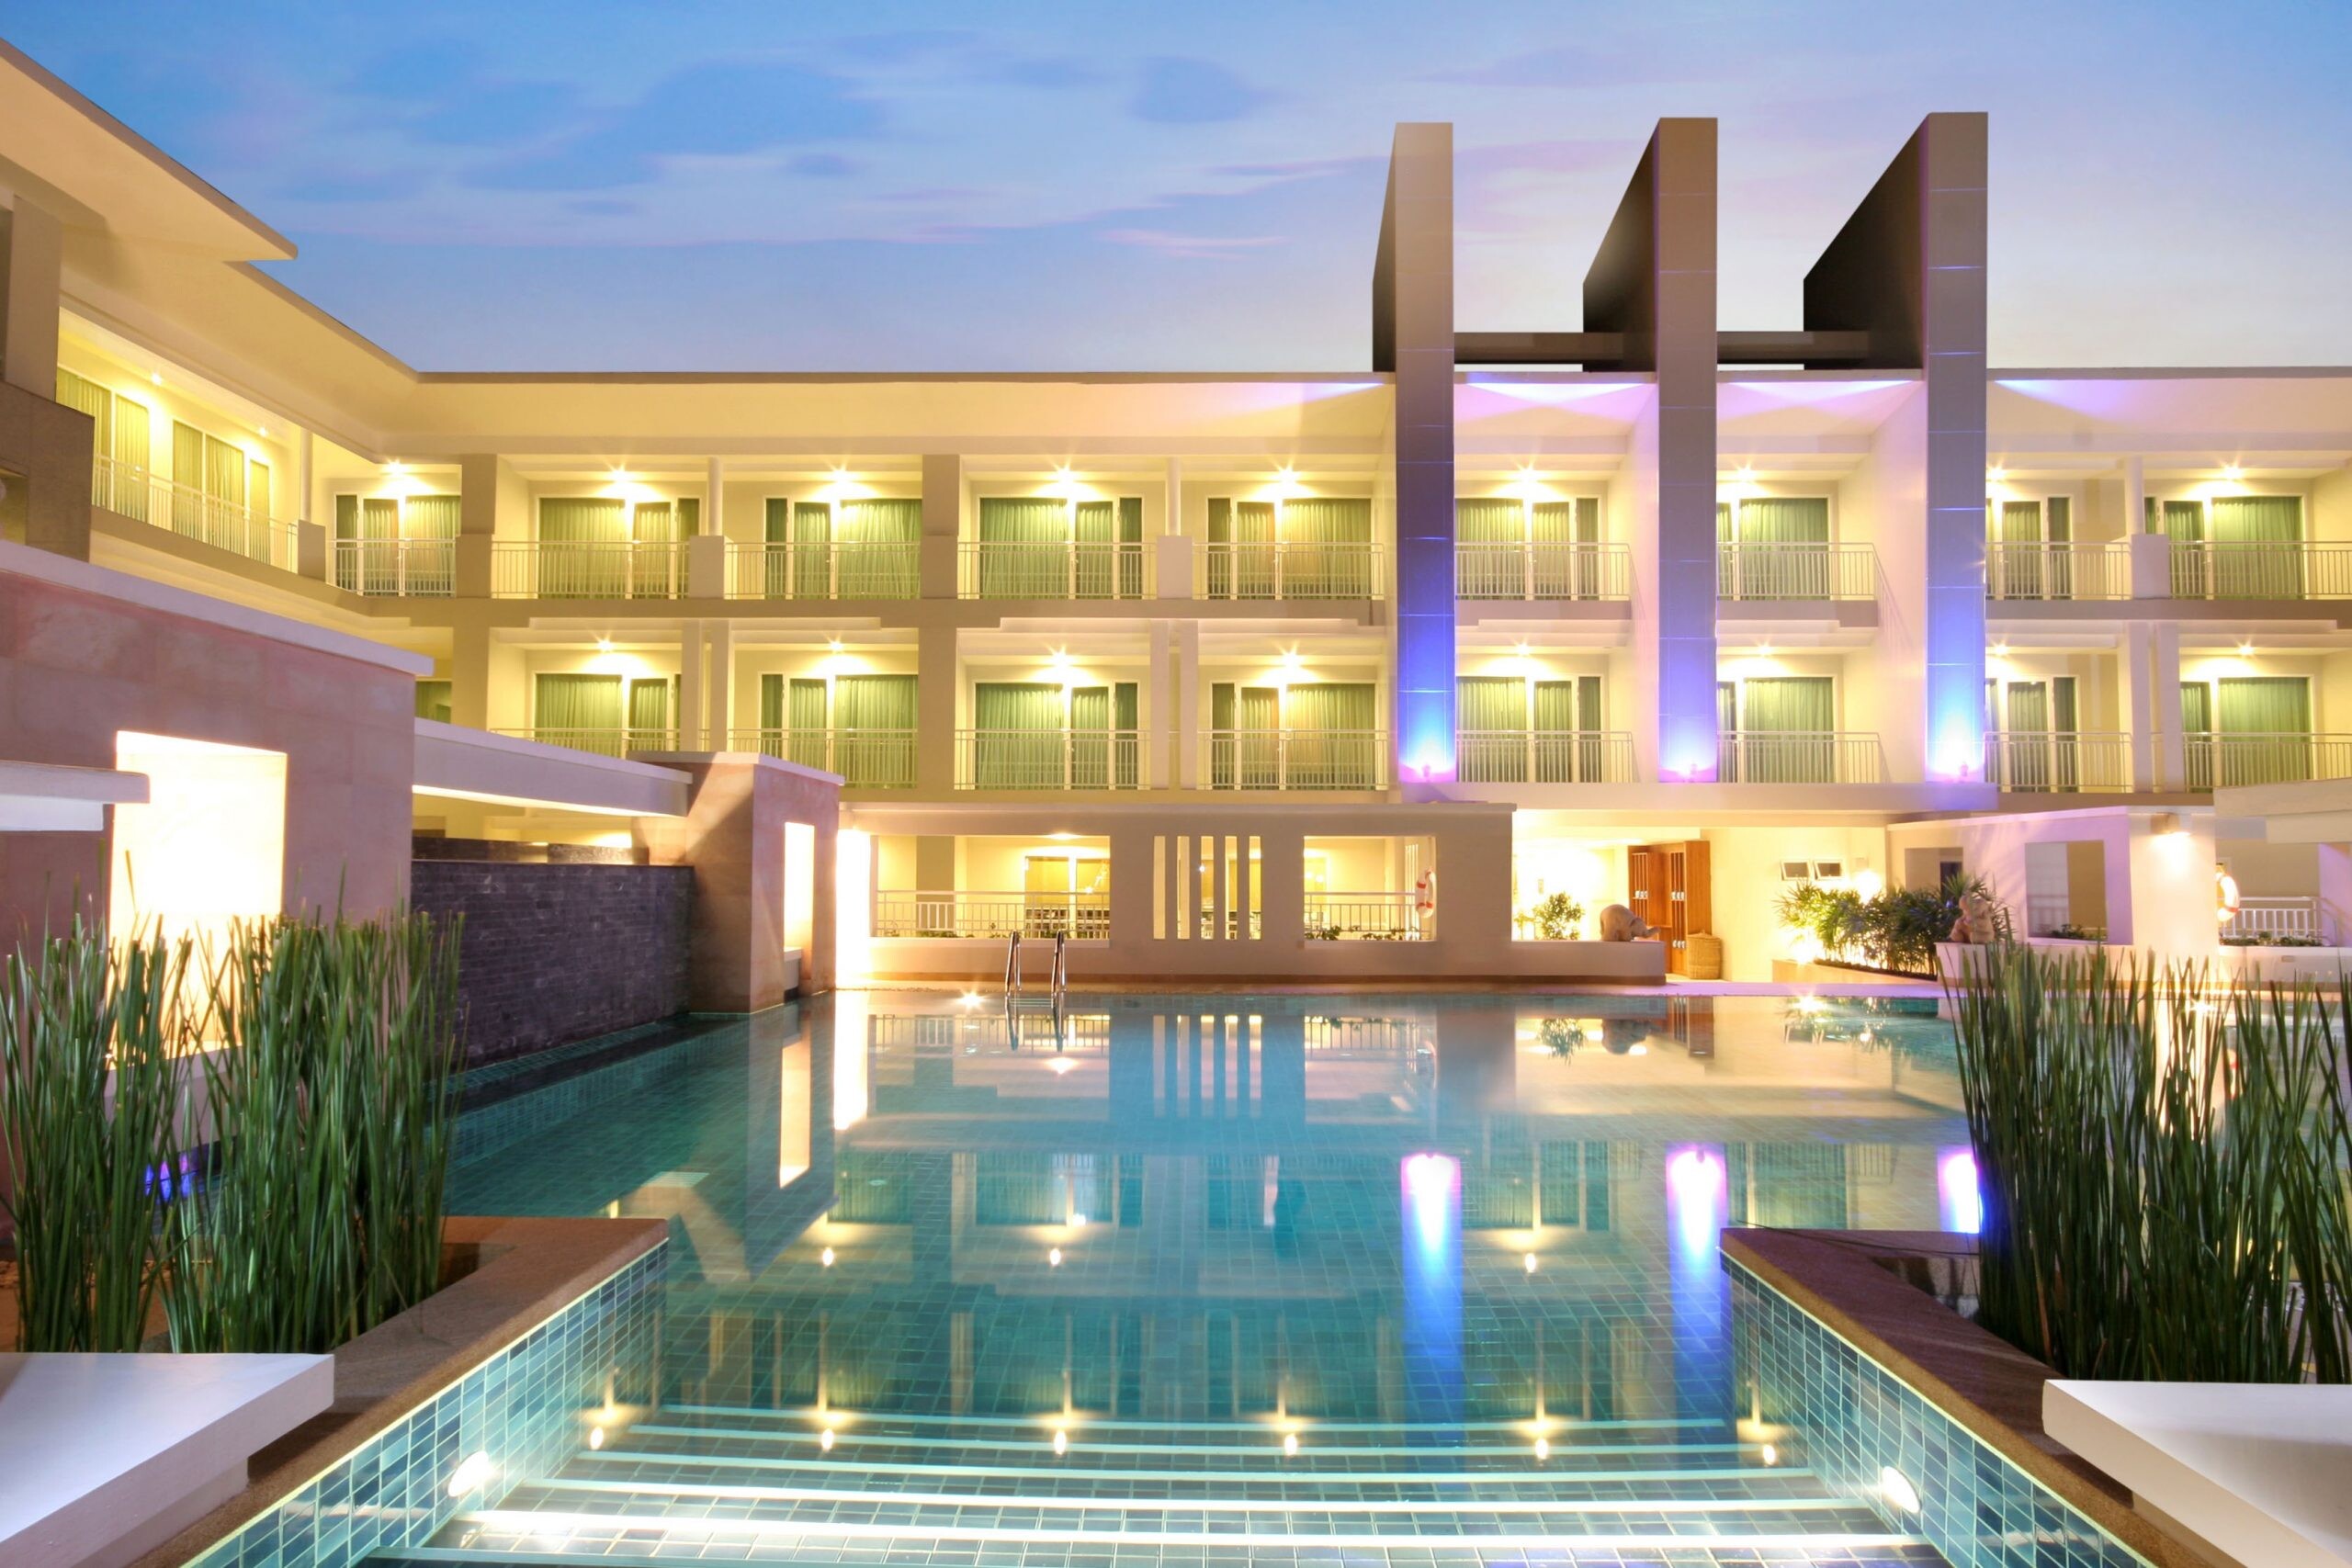 เที่ยวเมืองไทย เที่ยวได้ไม่ต้องรอ ล็อกความสุขกับดีลห้องพักราคาพิเศษ เริ่มต้นเพียง 900 บาท/คืน ณ โรงแรมในเครือเคป แอนด์ แคนทารี โฮเทลส์